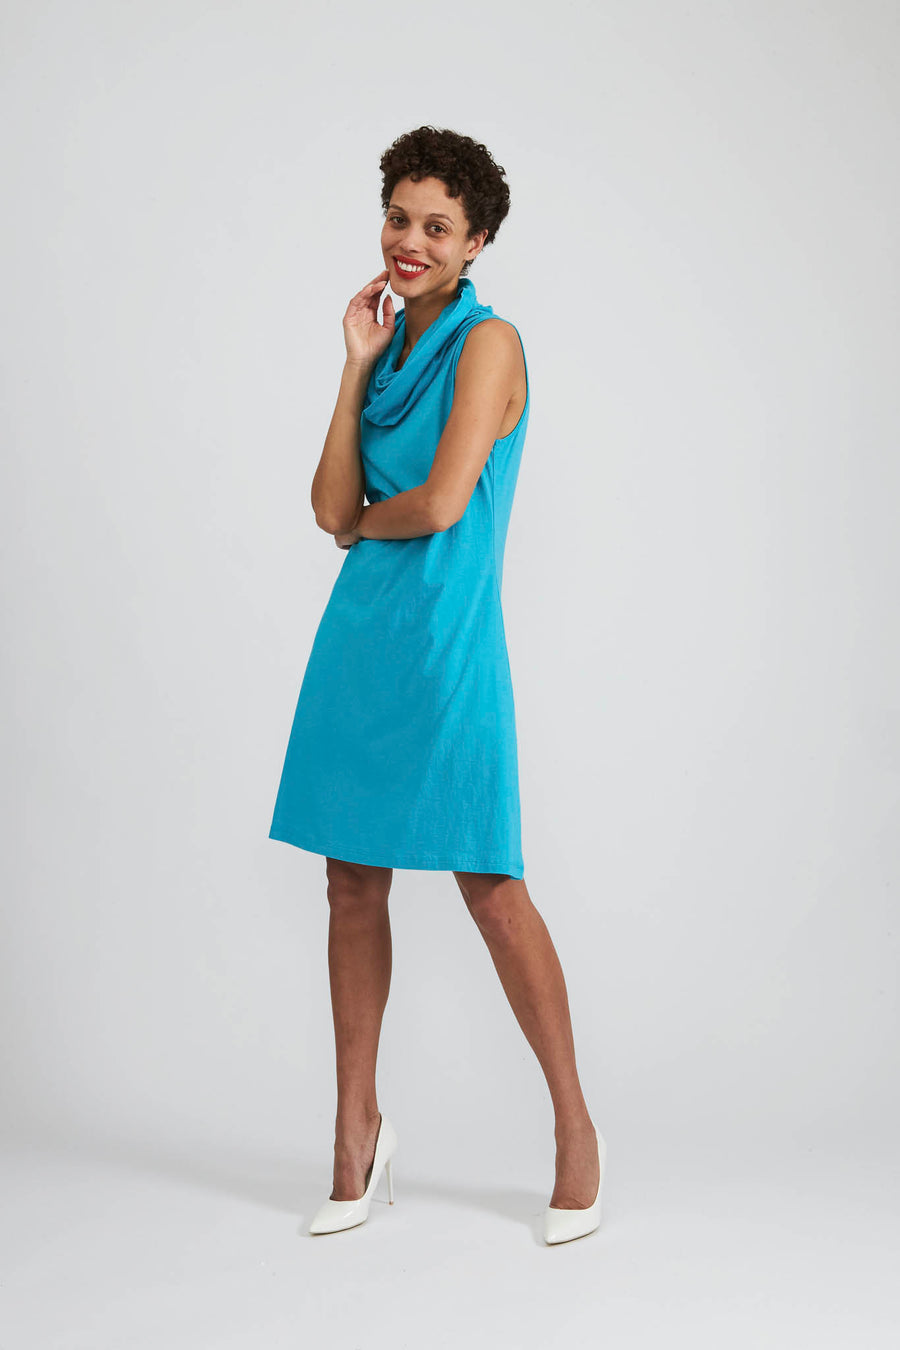 BATSHEVA - Norma Dress in Scuba Blue Jersey